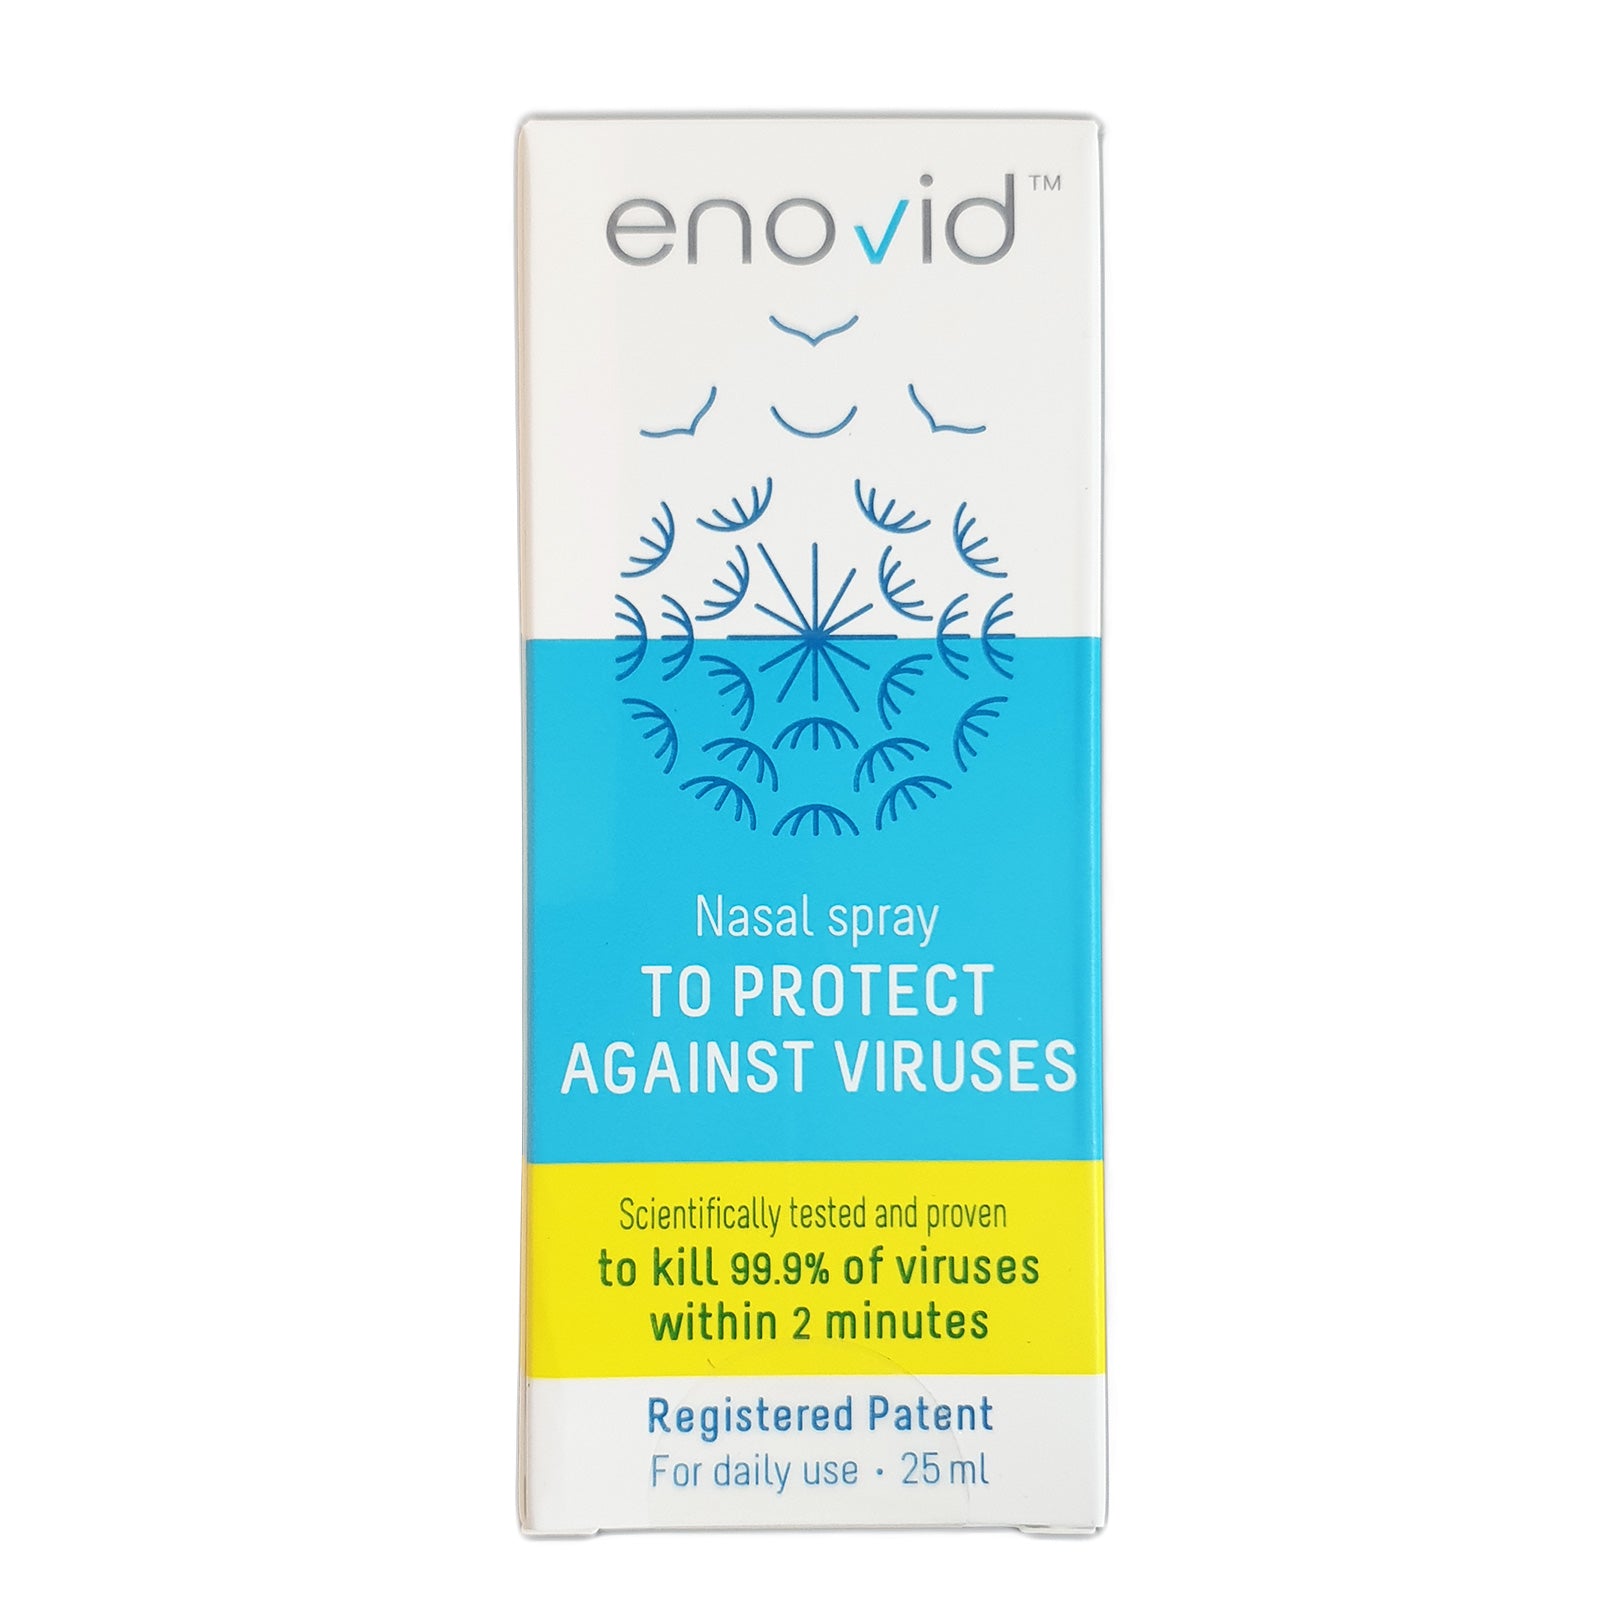 12-PACK Enovid SaNOtize Nitric Oxide Nasal Spray (NONS)